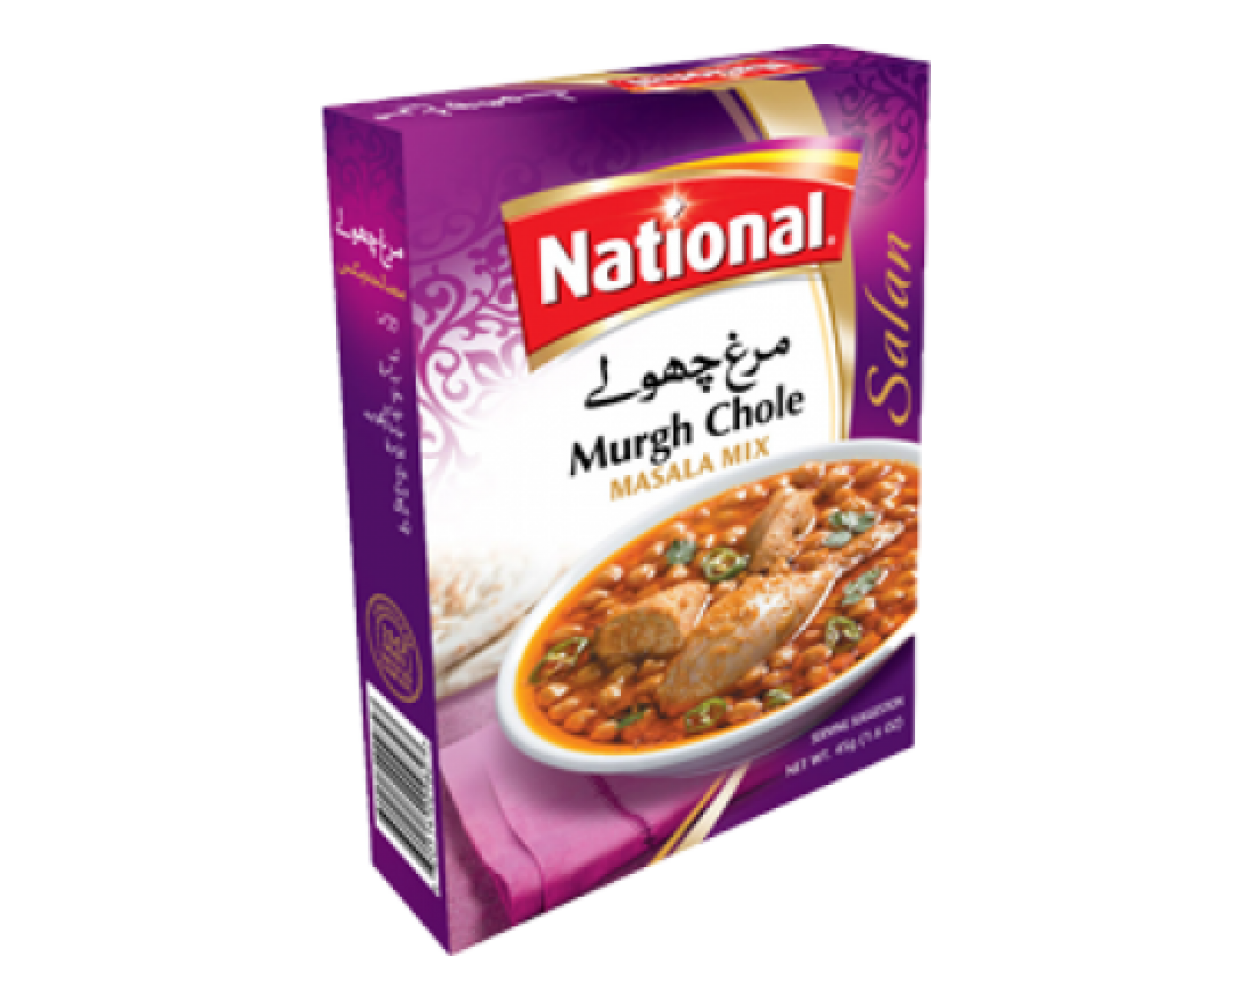 National Murgh Chole Masala Mix -50 Grams.